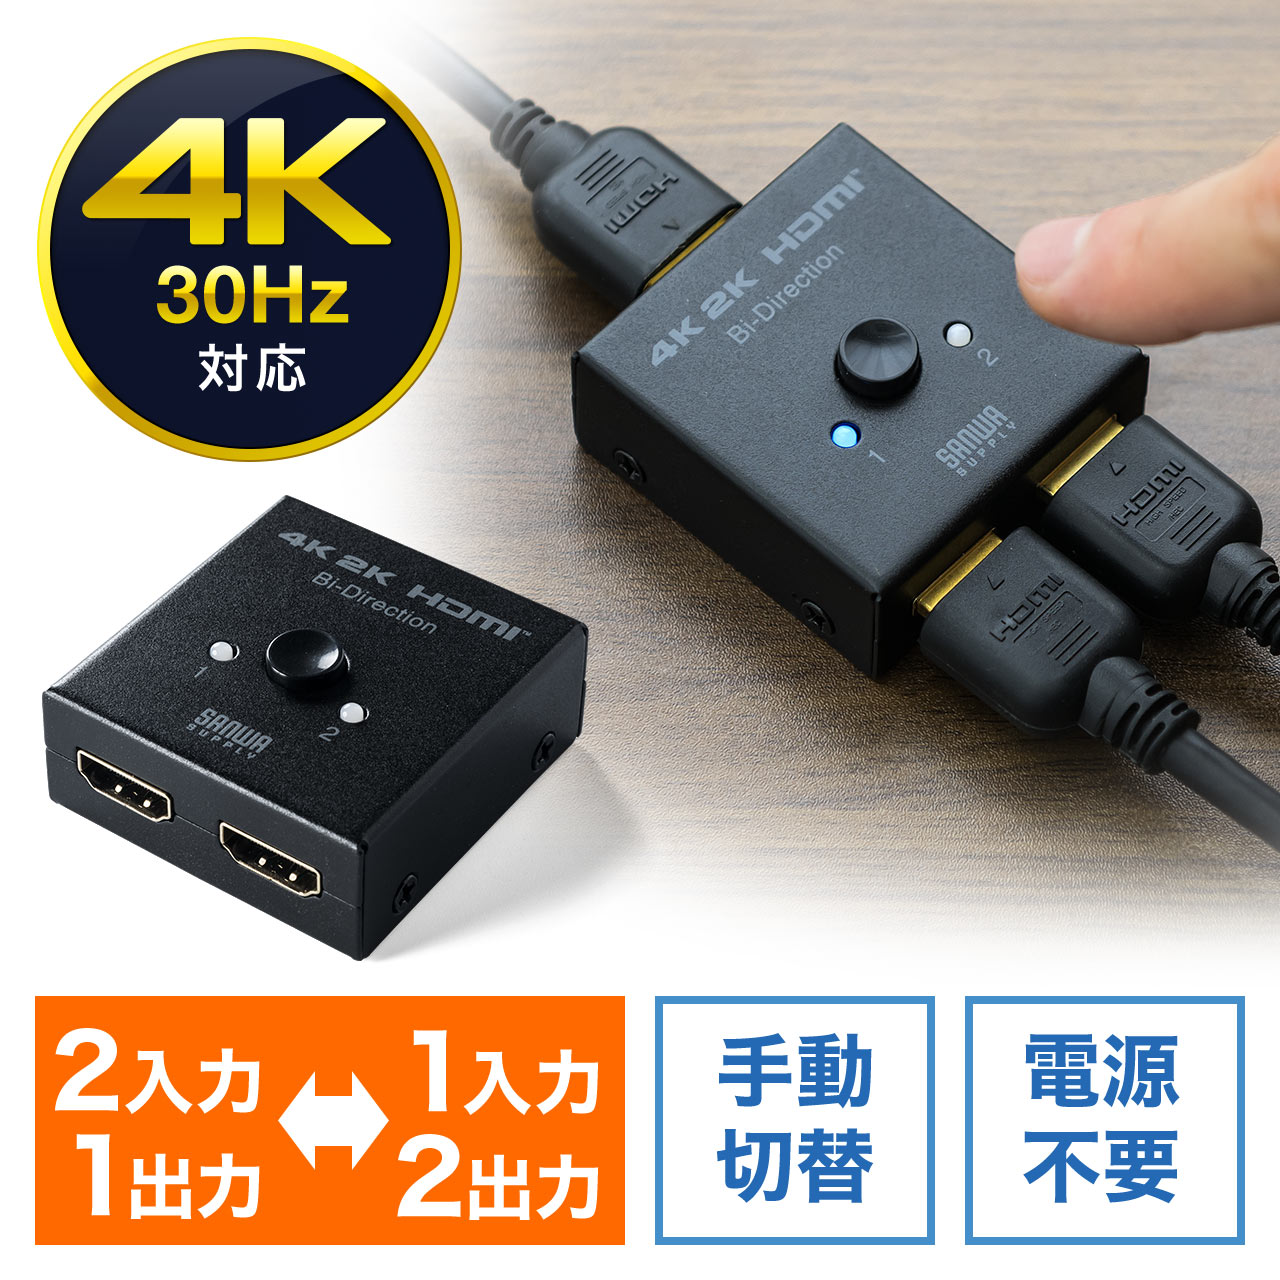 双方向HDMI切替器 2入力1出力 1入力2出力 4K/30Hz対応 HDMIセレクター 400-SW028の販売商品 通販ならサンワダイレクト